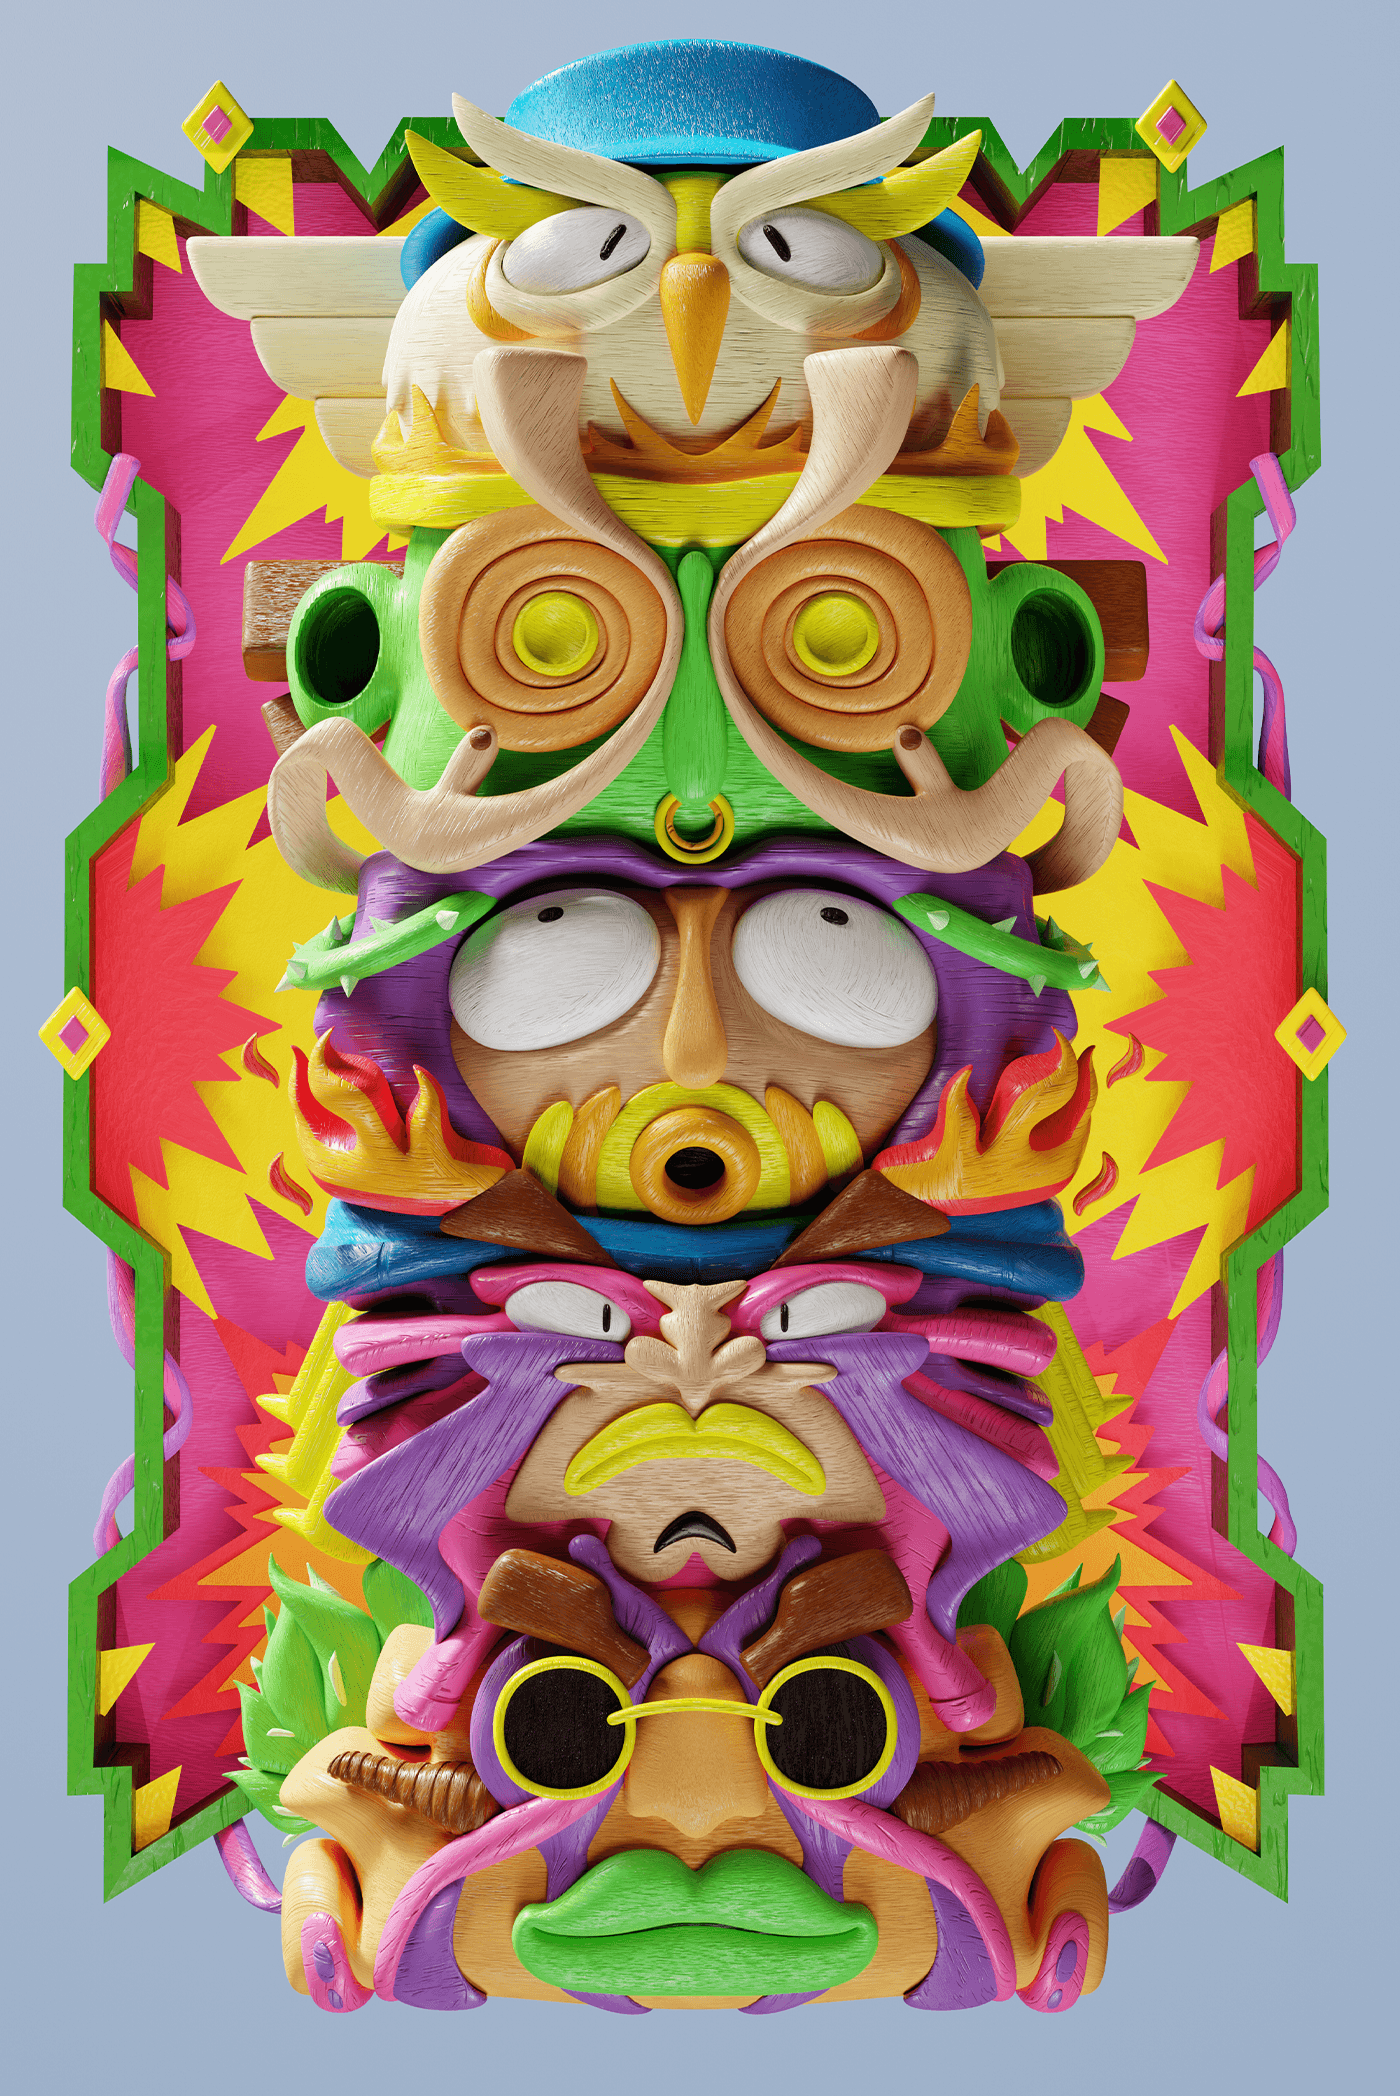 3D blender Digital Art  ILLUSTRATION  poster Character design  cartoon composition psychedelic 2D